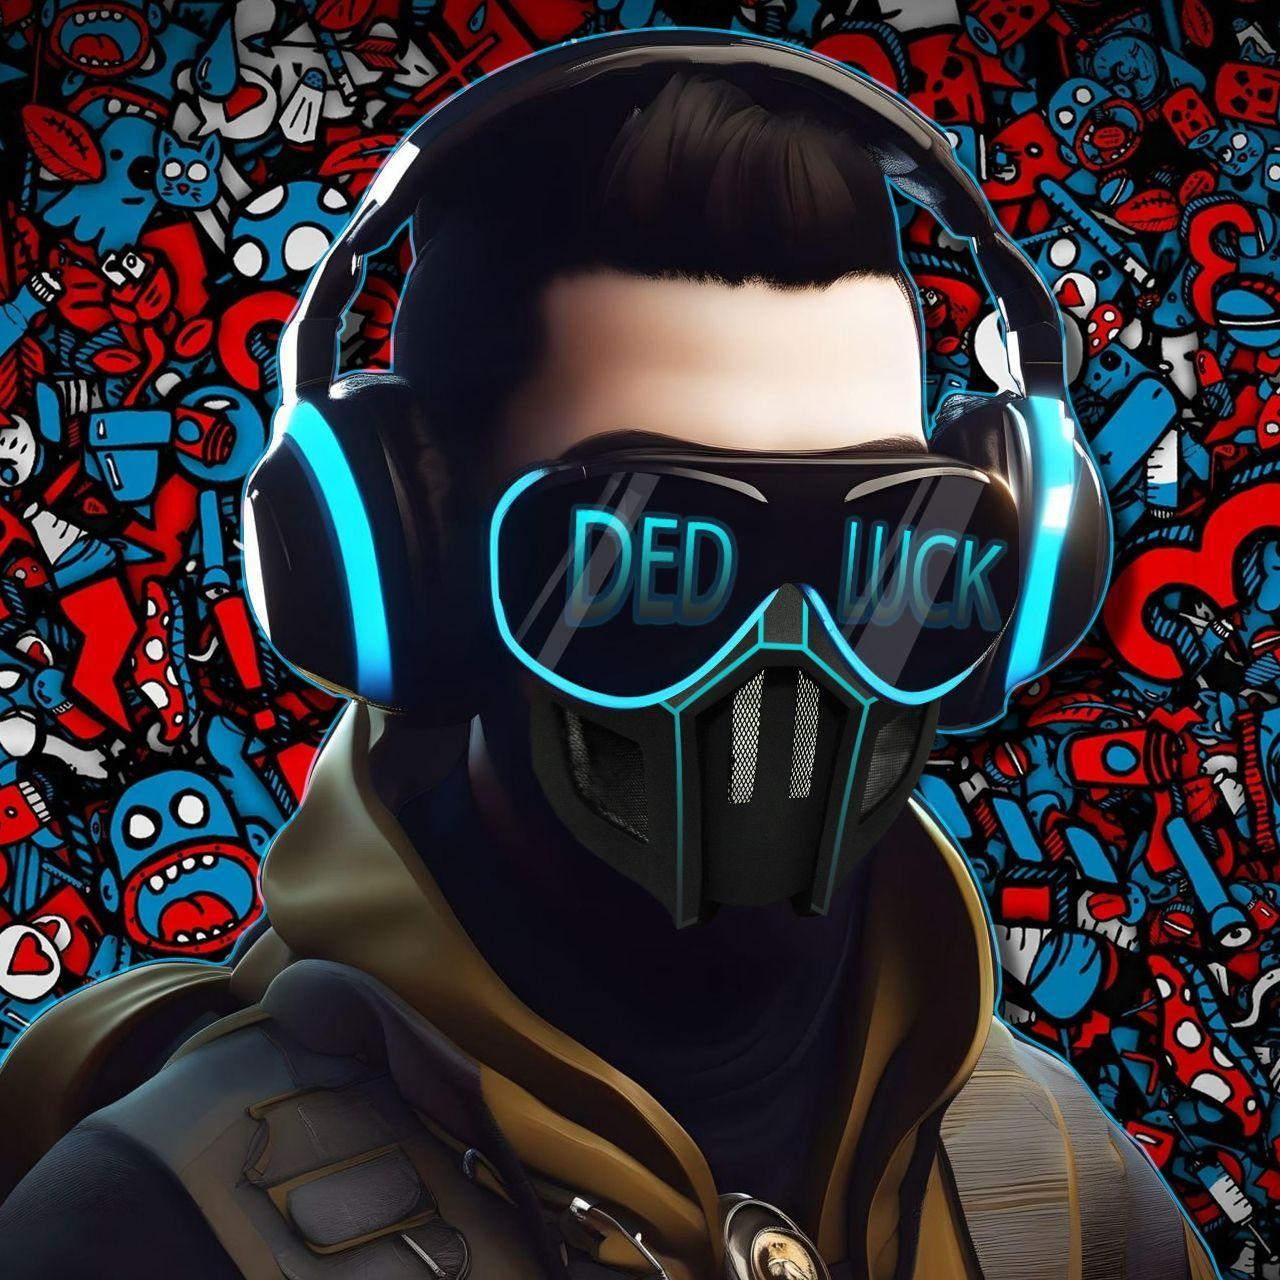 Player Ded_Luckk avatar